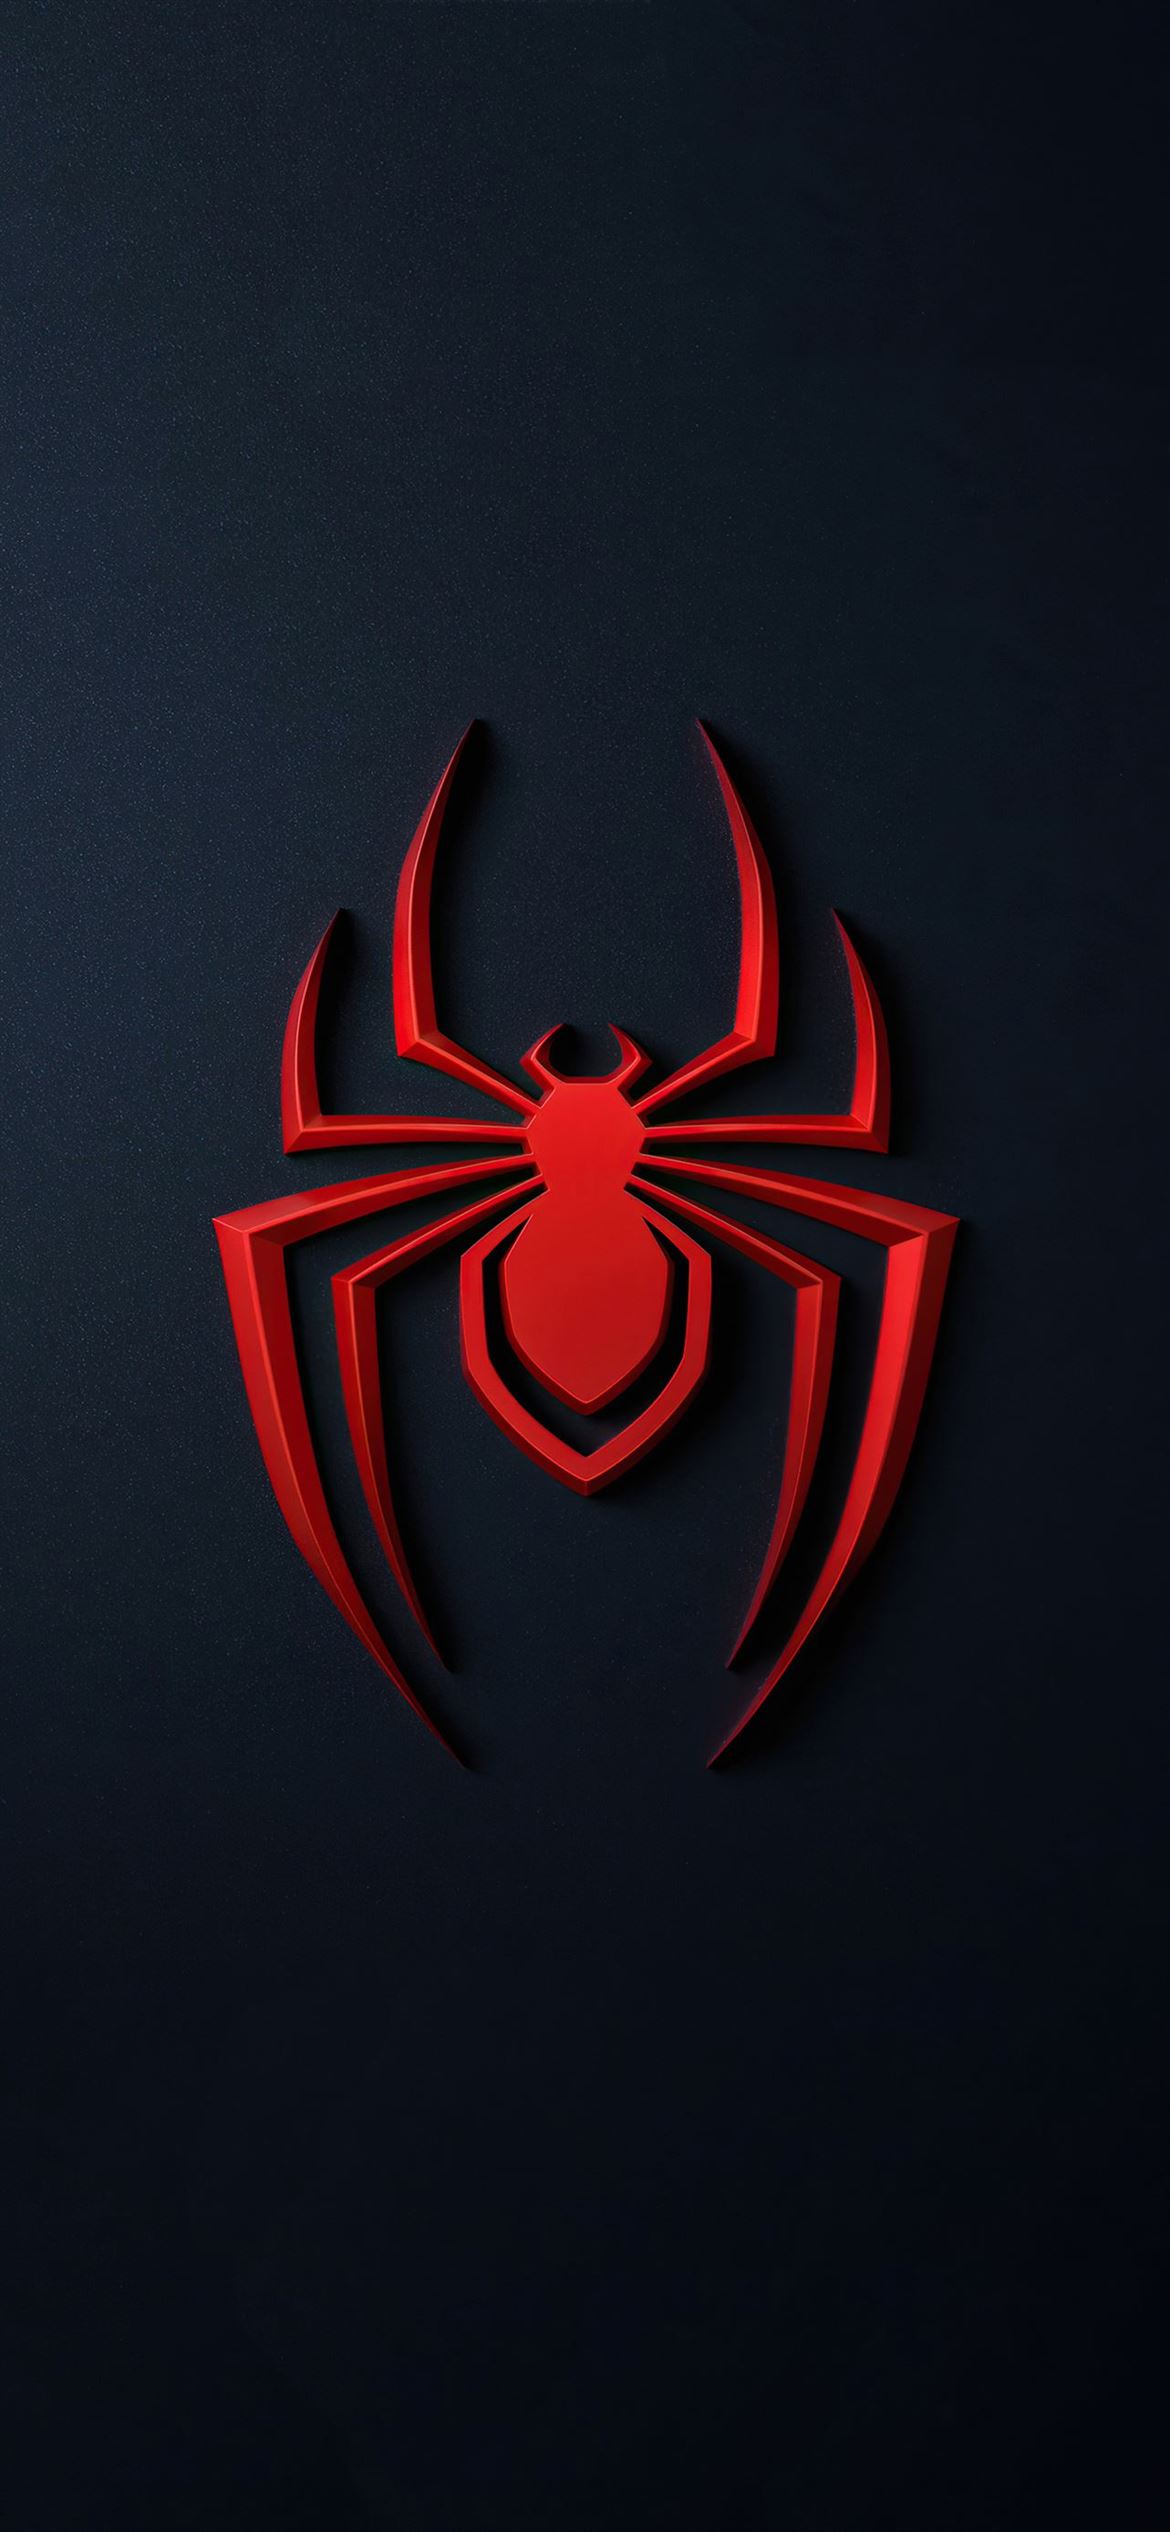 Bạn là fan của Spider-Man Miles Morales? Hãy xem hình ảnh đẹp về logo của anh hùng này để cảm nhận rõ hơn về thế giới siêu anh hùng đầy sức mạnh và những thử thách nguy hiểm. Đừng bỏ lỡ một trong những nhân vật anh hùng nổi tiếng nhất trong vũ trụ Marvel.